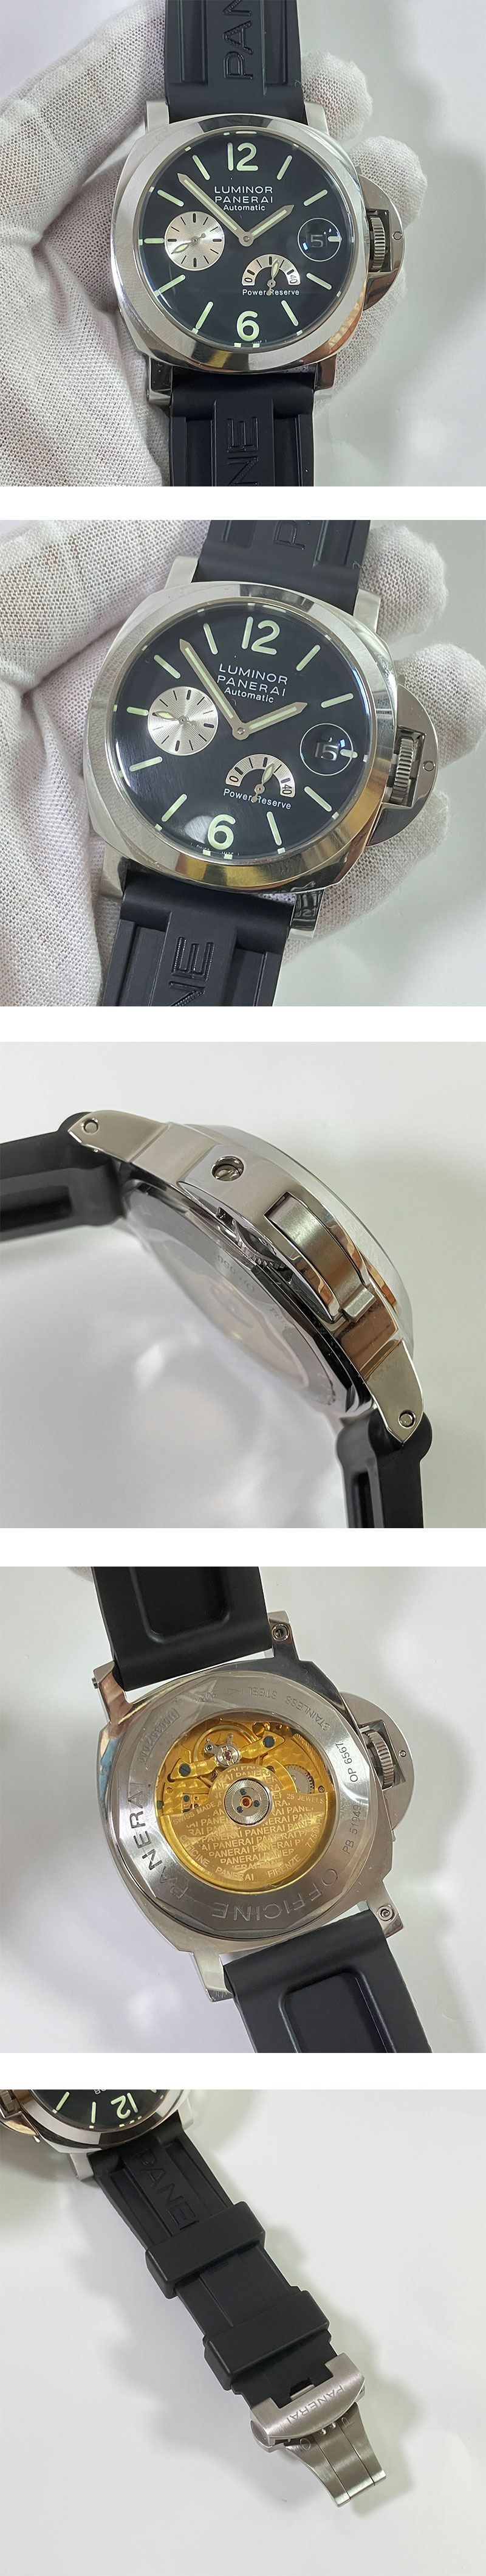 格安腕時計通販 パネライ ルミノール パワーリザーブ Asian 21600振動 (AUTOMATIC) デイト  スーパールミナンス